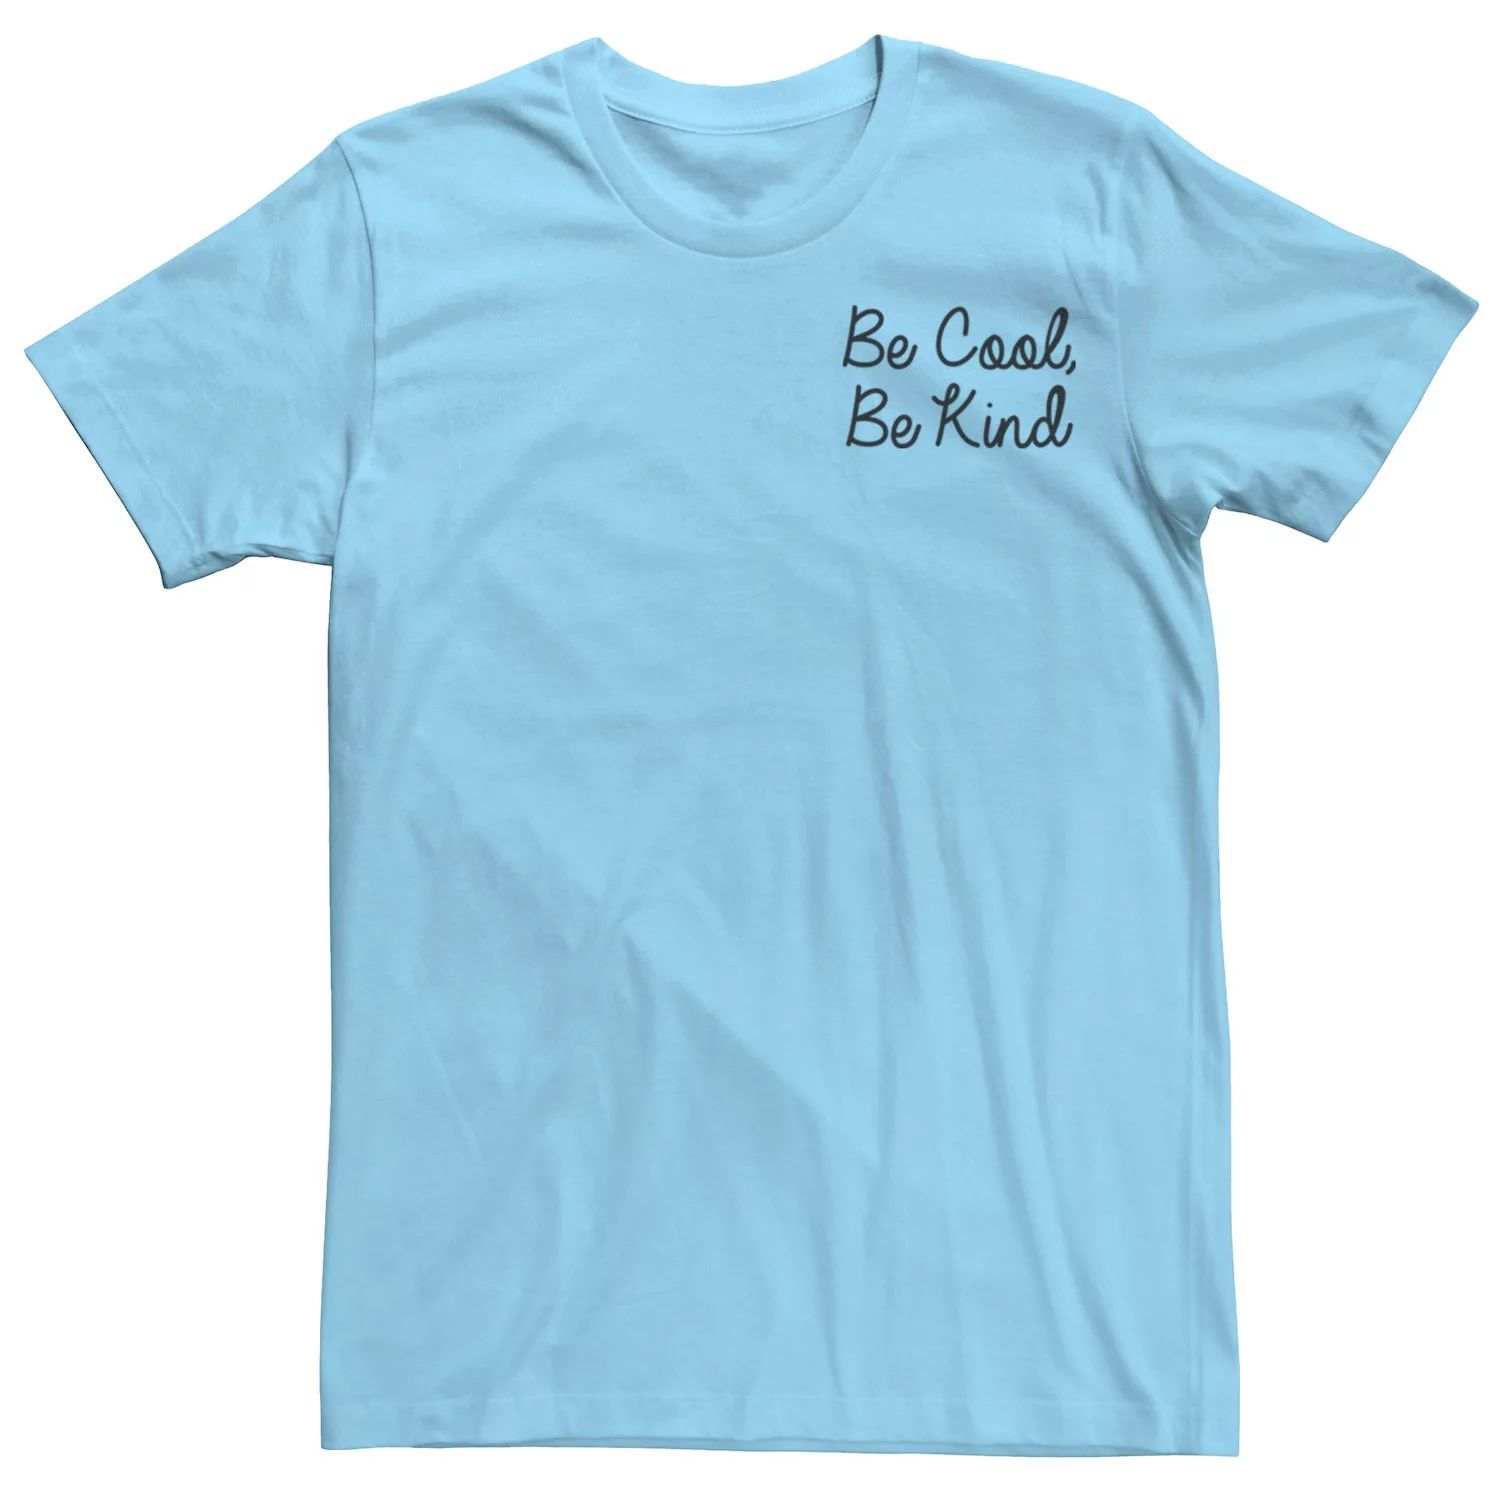 Мужская футболка Fifth Sun Be Cool Be Kind с надписью Licensed Character мужская футболка be kind s зеленый